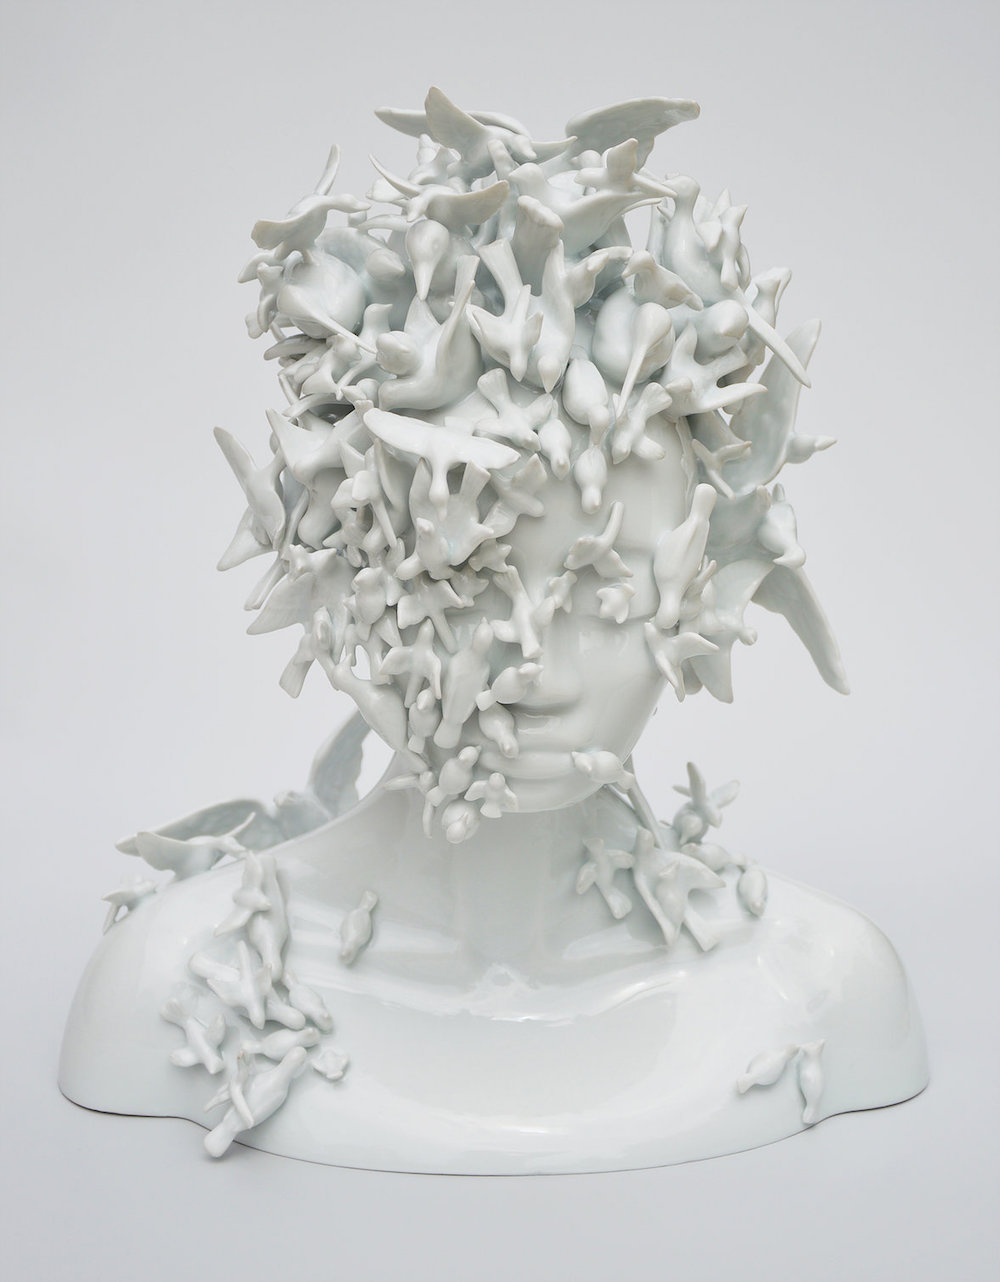 surreal porcelain sculptures by juliette clovis